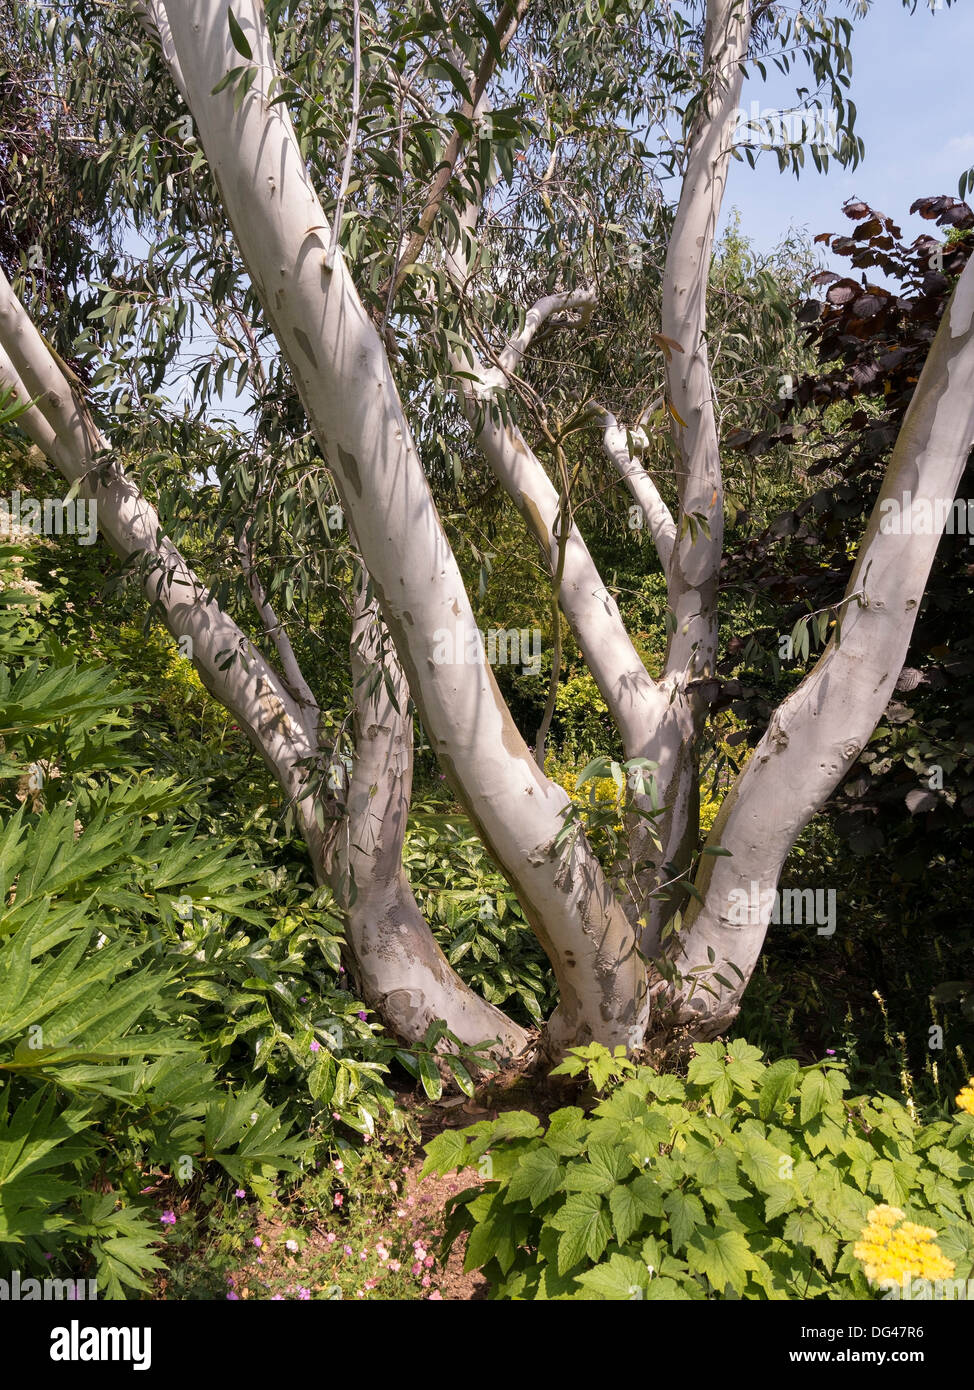 Weiße Rinde und Stämme von Eucalyptus pauciflora Niphophila-Bäumen, die in Barnsdale Gardens, Rutland, England, Großbritannien wachsen Stockfoto